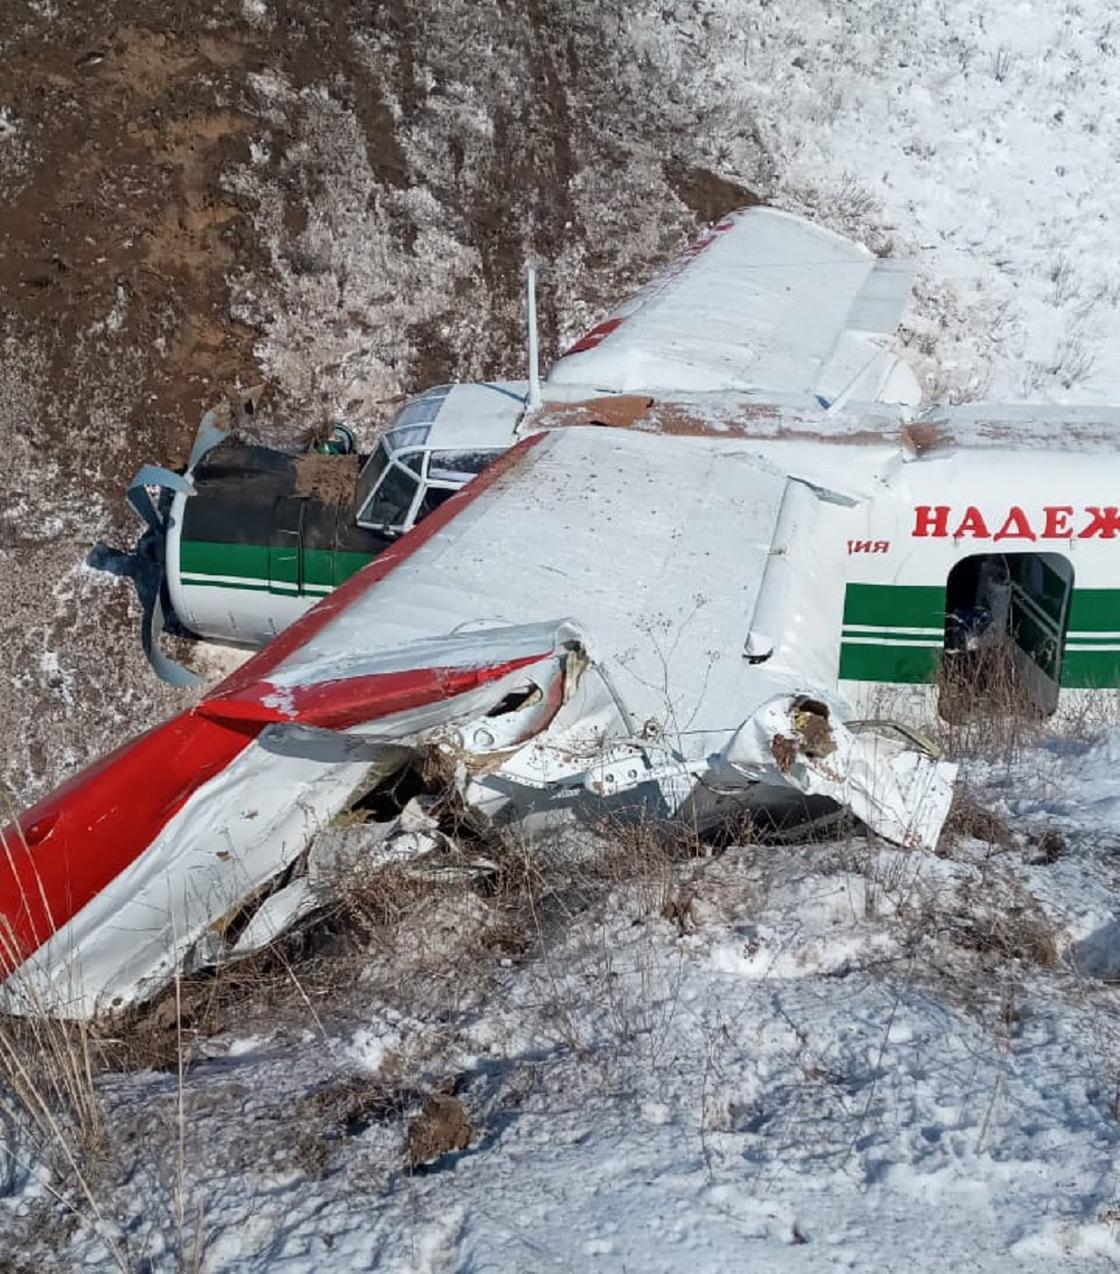 Самолет экстренно сел в Алматинской области